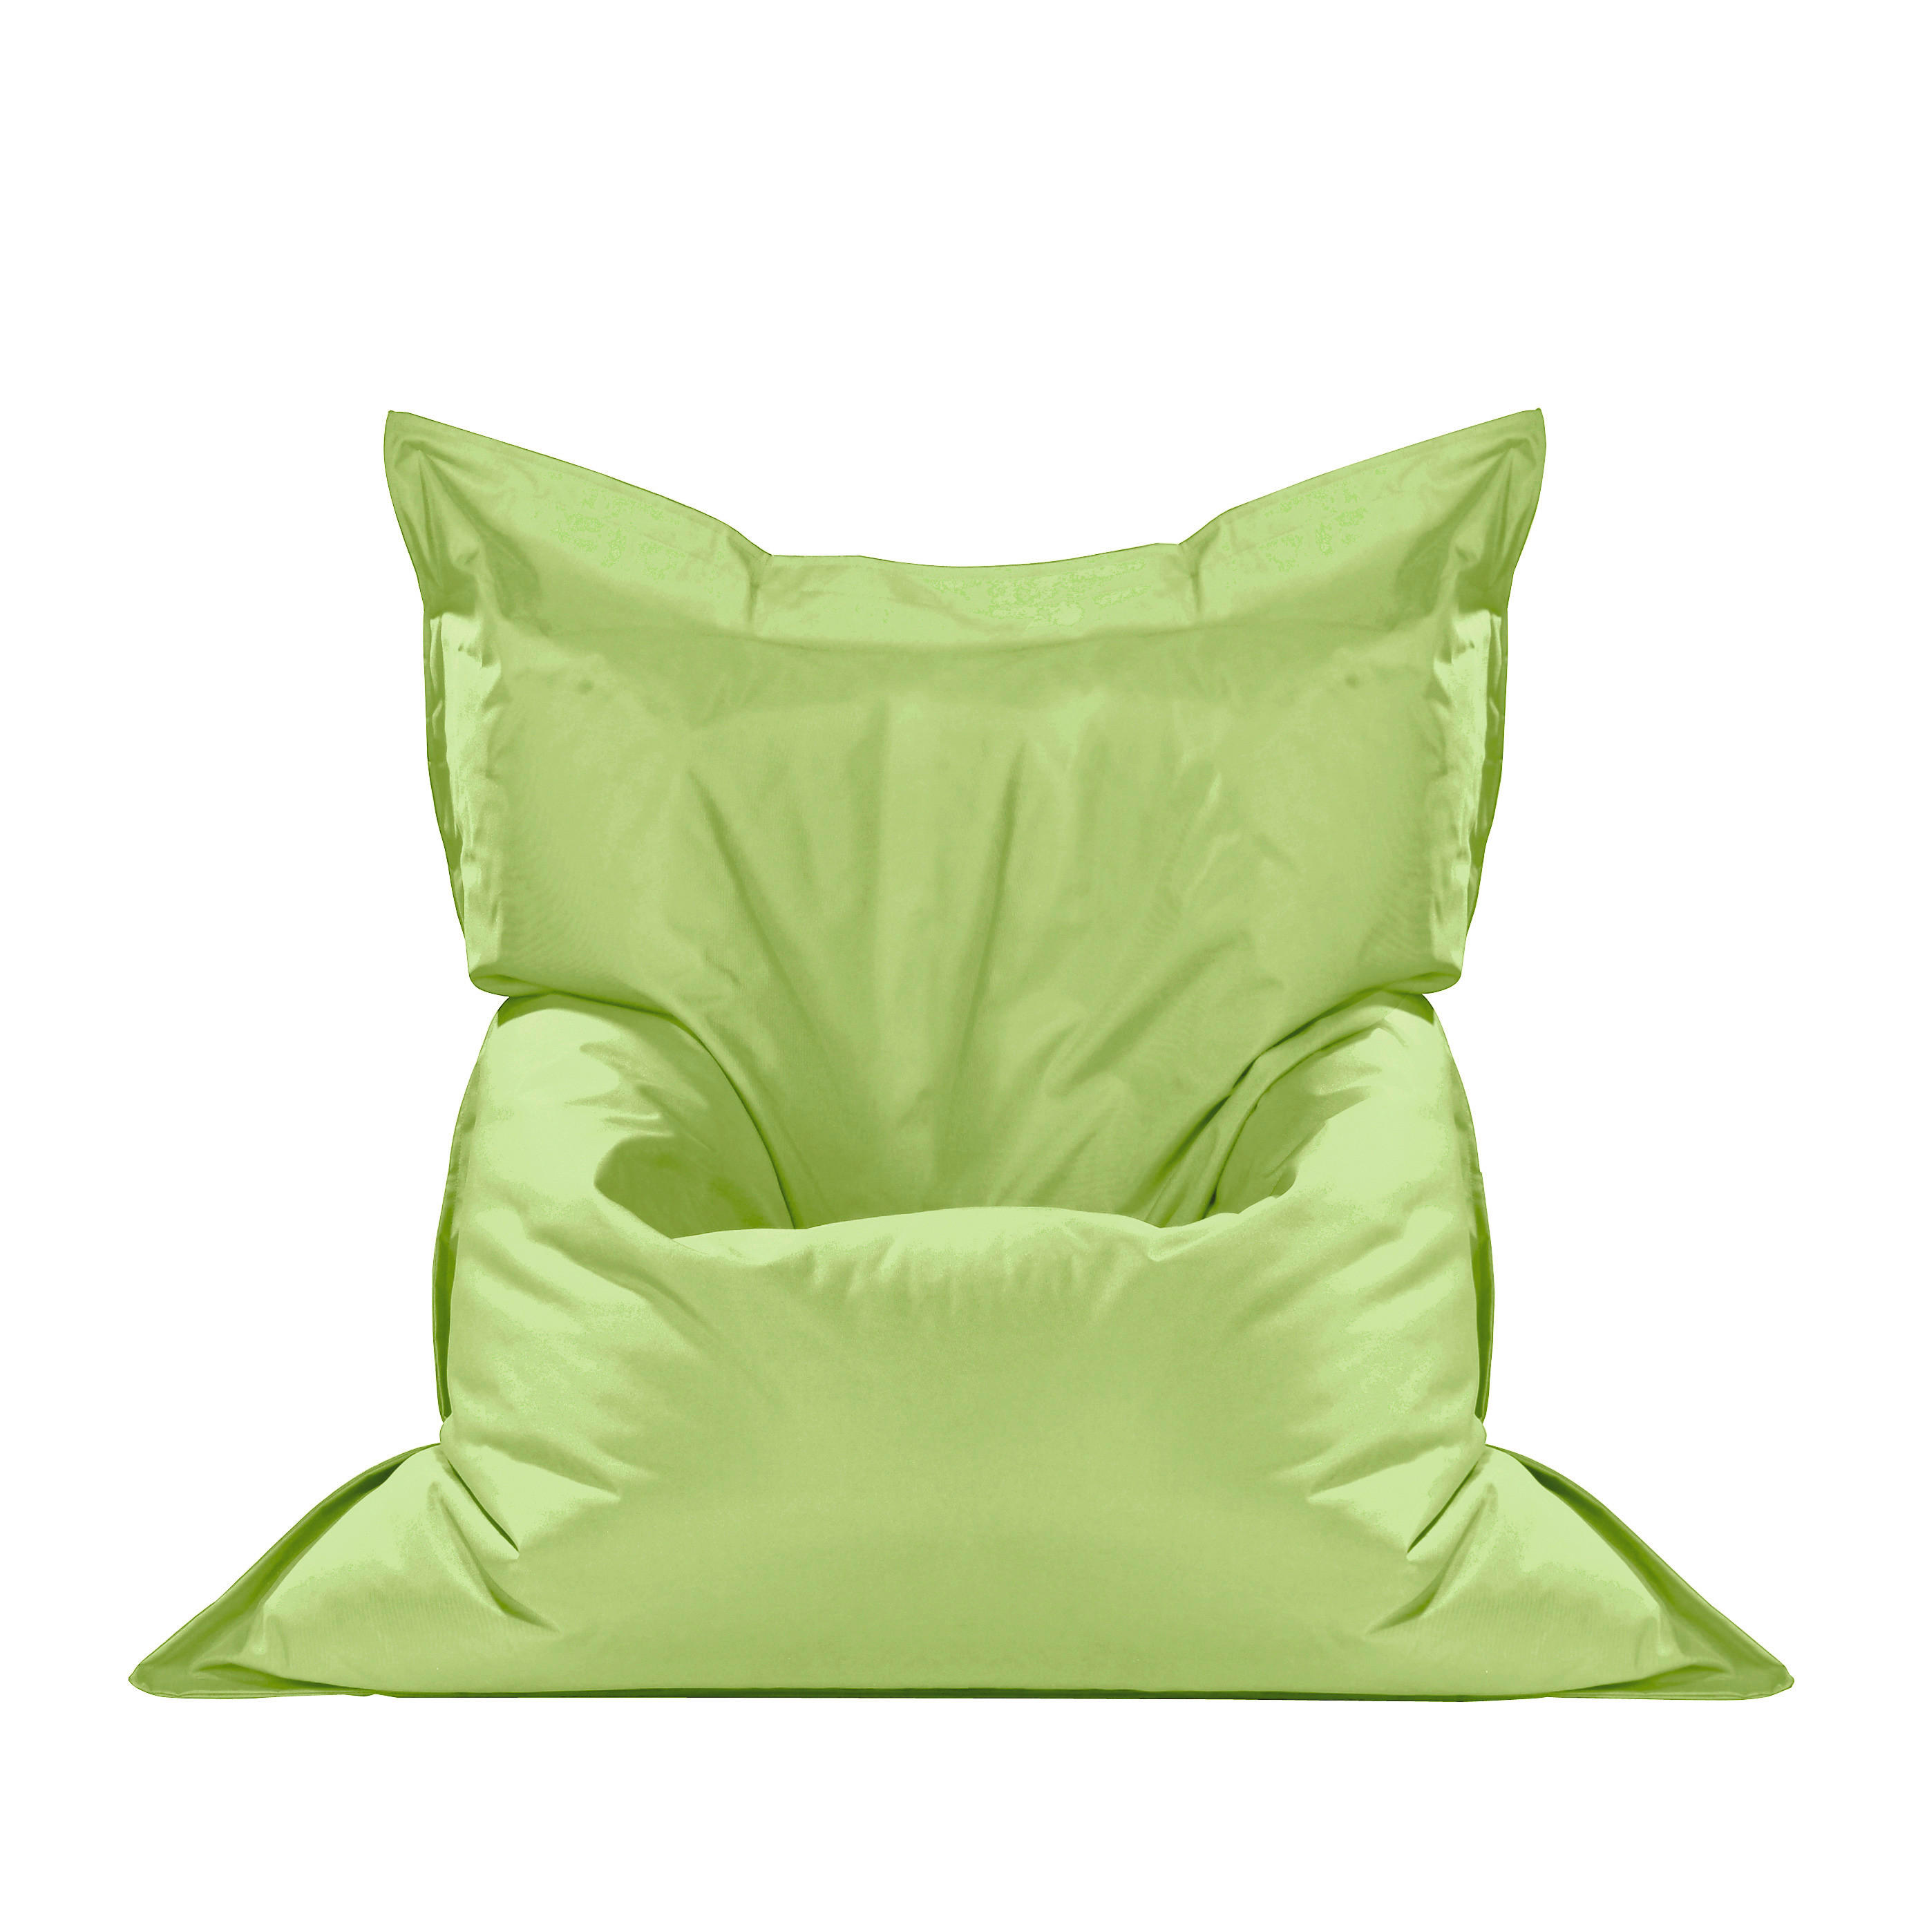 SAC DE șEZUT 380 l  - verde, Design, textil (140/180/140cm) - Boxxx